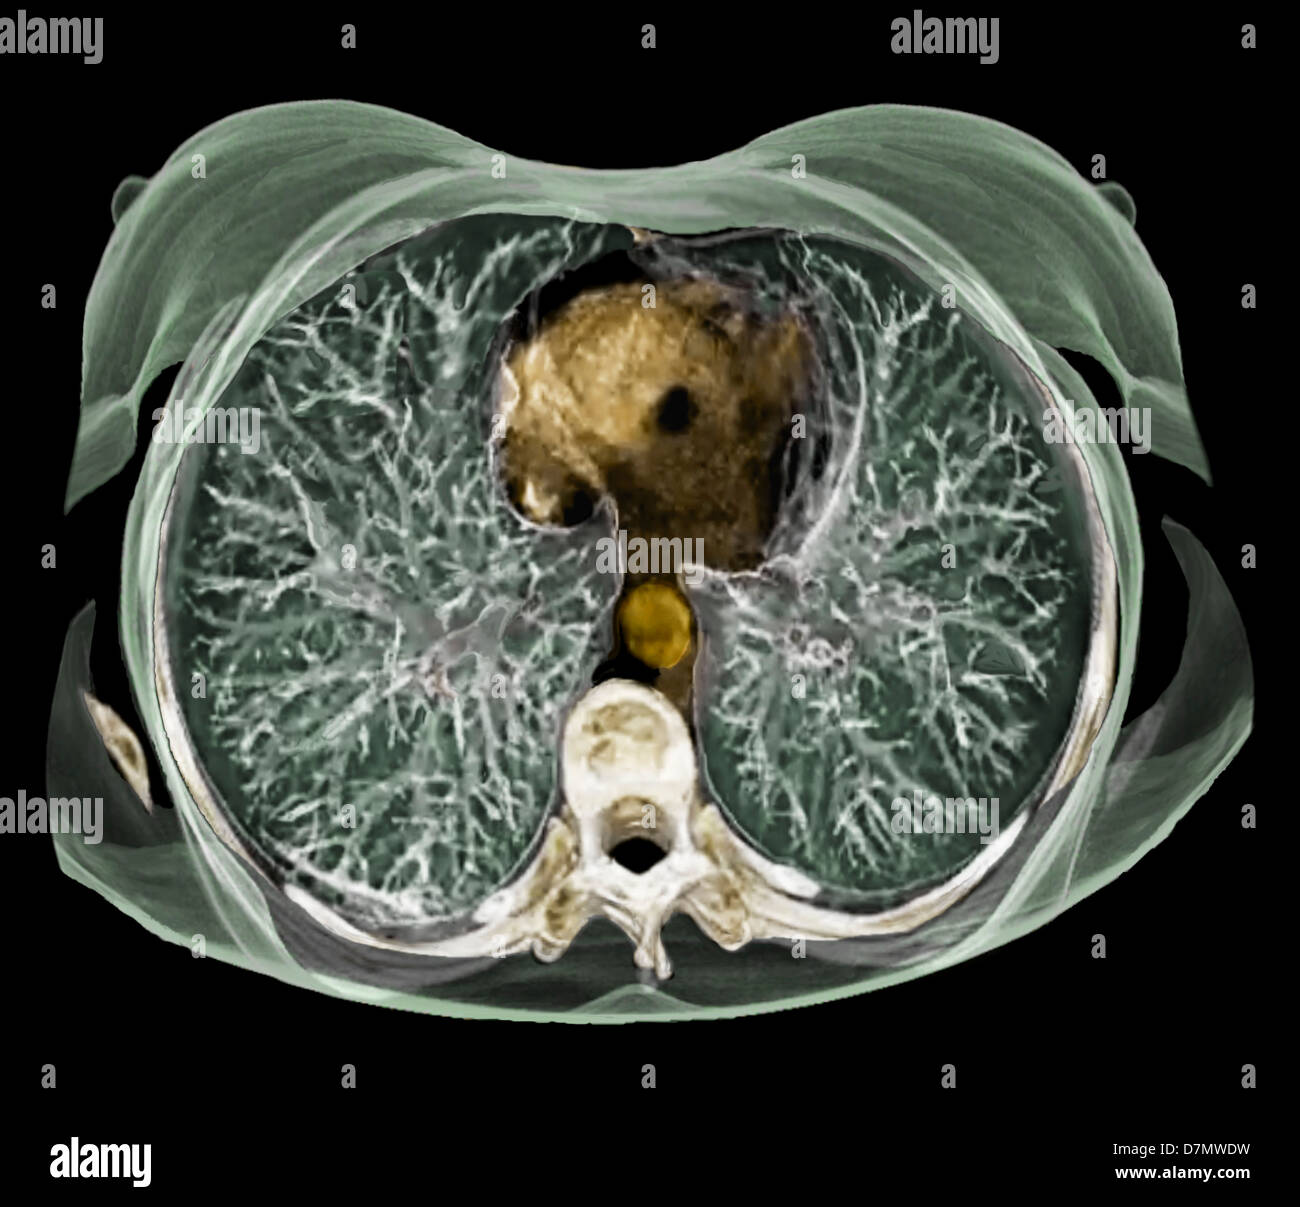 Anatomie de la poitrine, 3D CT scan Banque D'Images